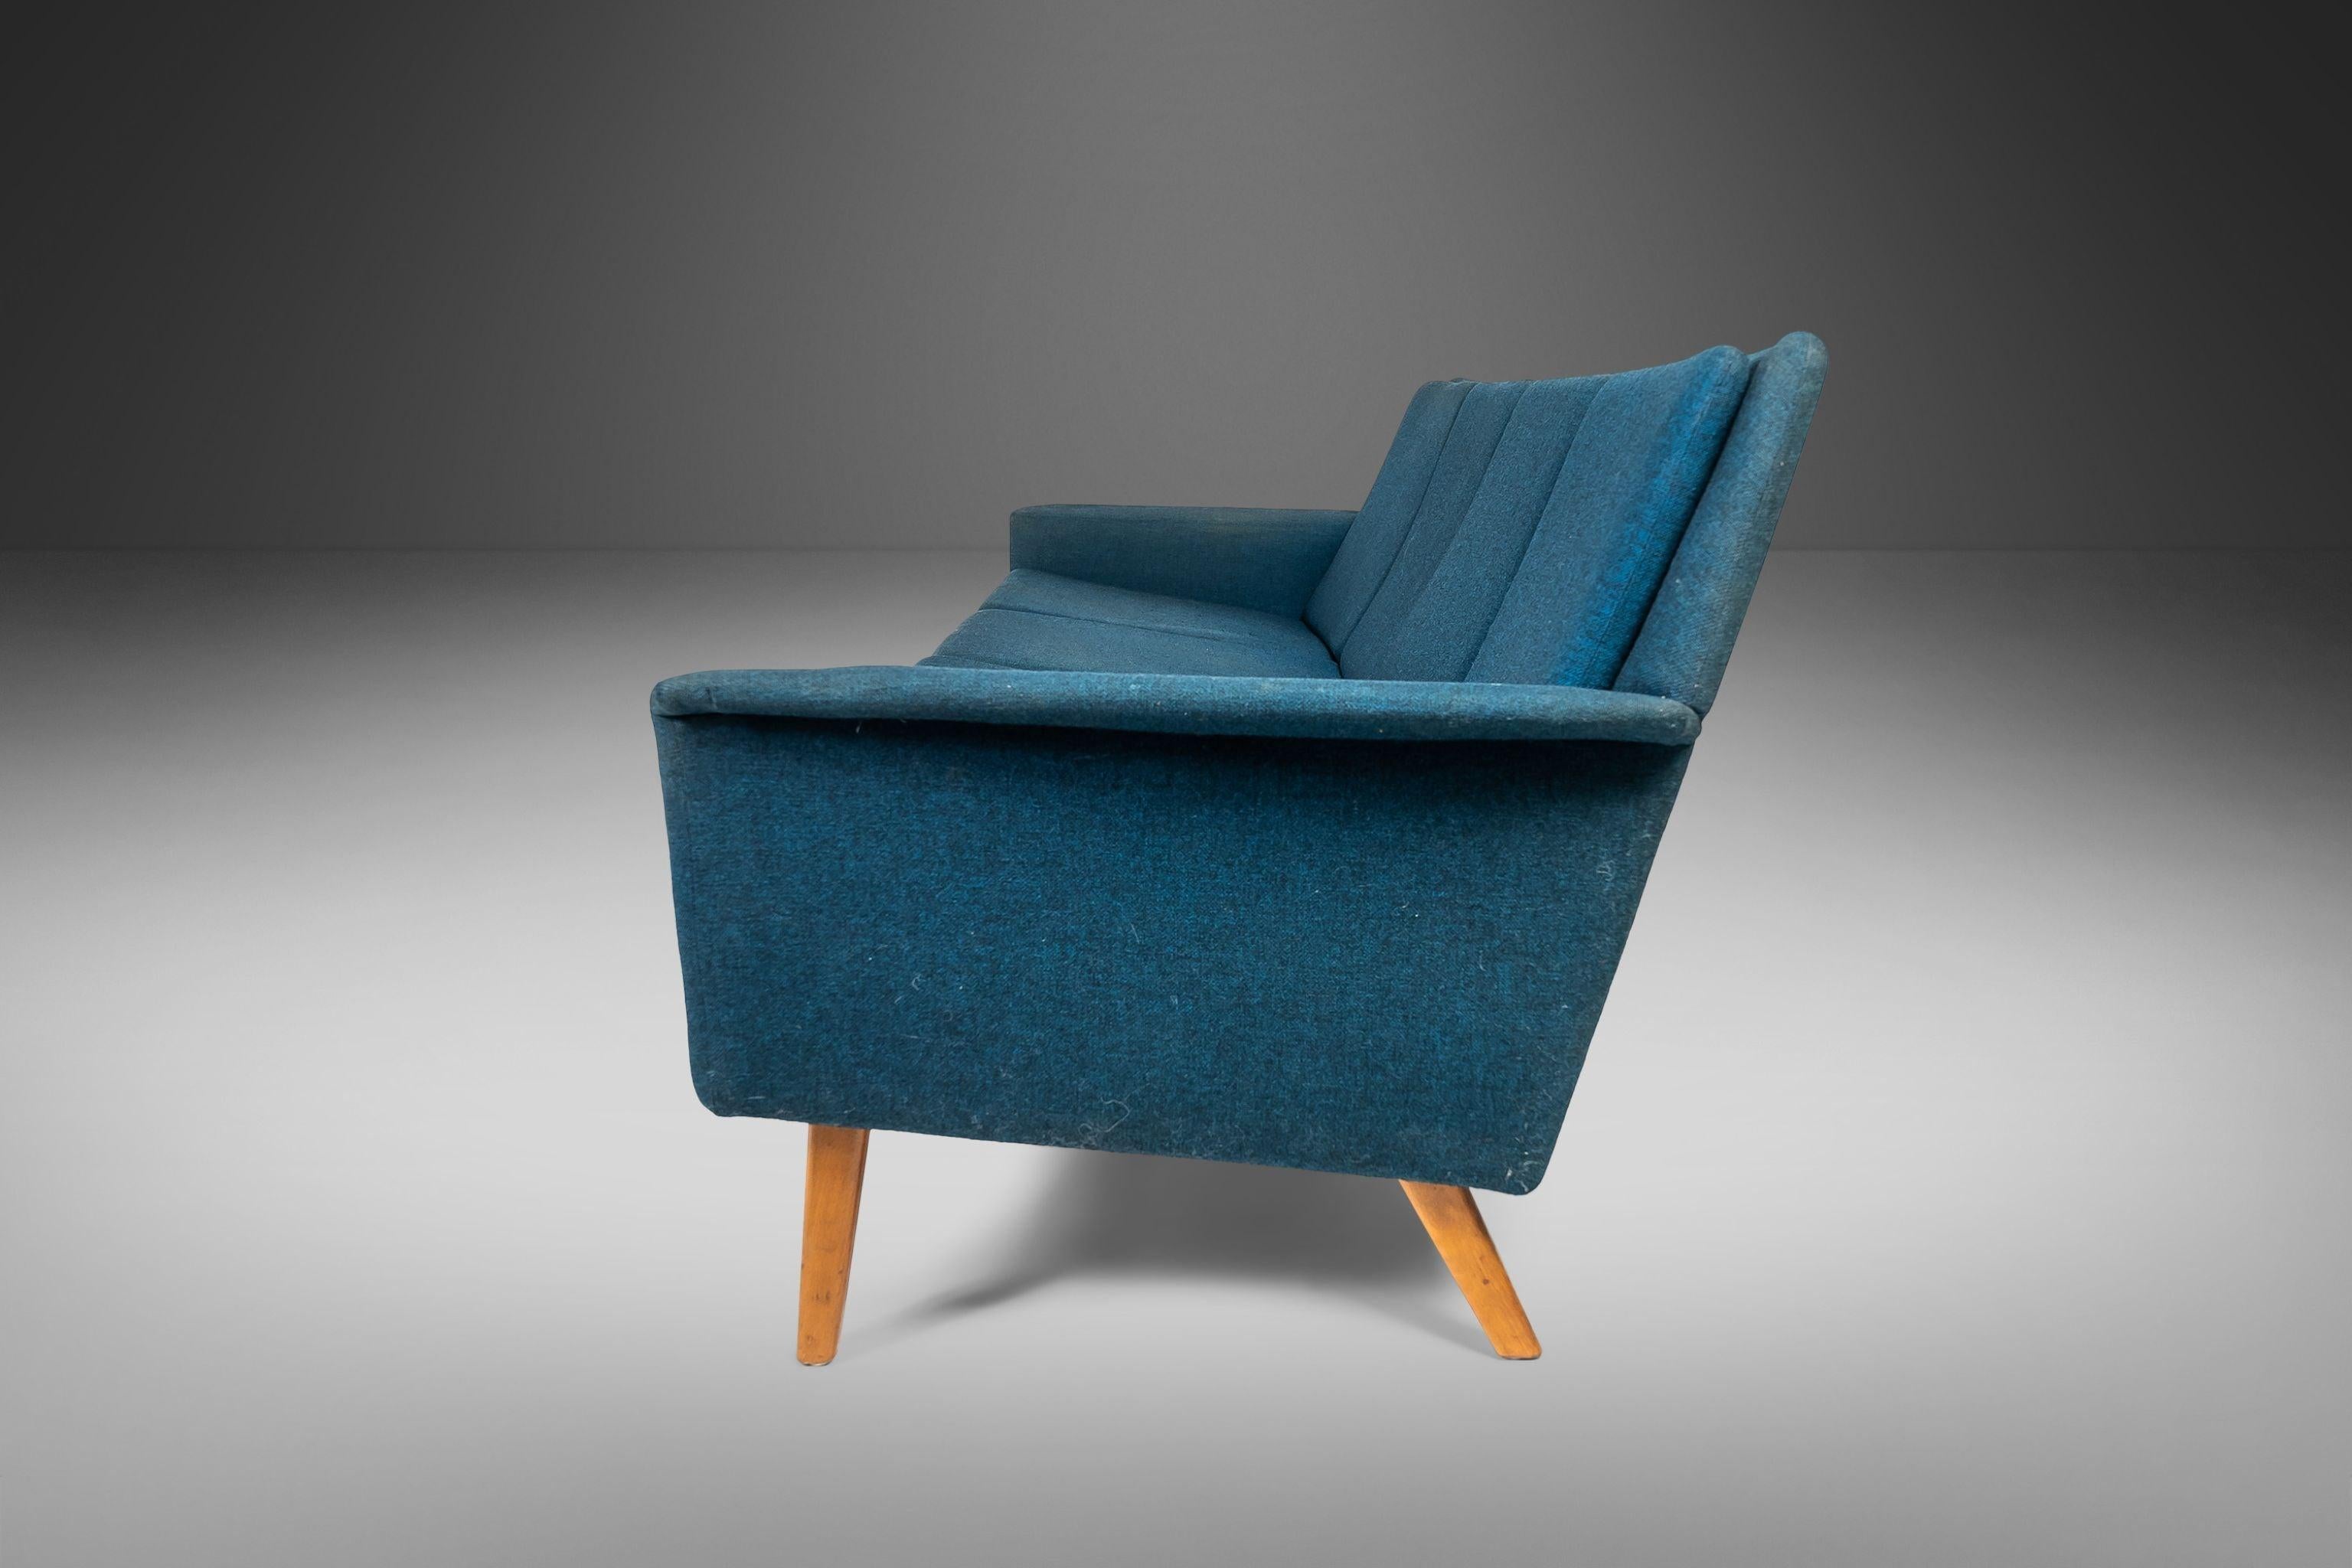 Attention aux designers et aux créatifs ! Cet exceptionnel canapé danois conçu par Folke Ohlsson et Fritz Hansen a besoin d'un nouveau rembourrage et nous voulons vous laisser le soin de choisir le tissu. Avec ses lignes élégantes et angulaires et